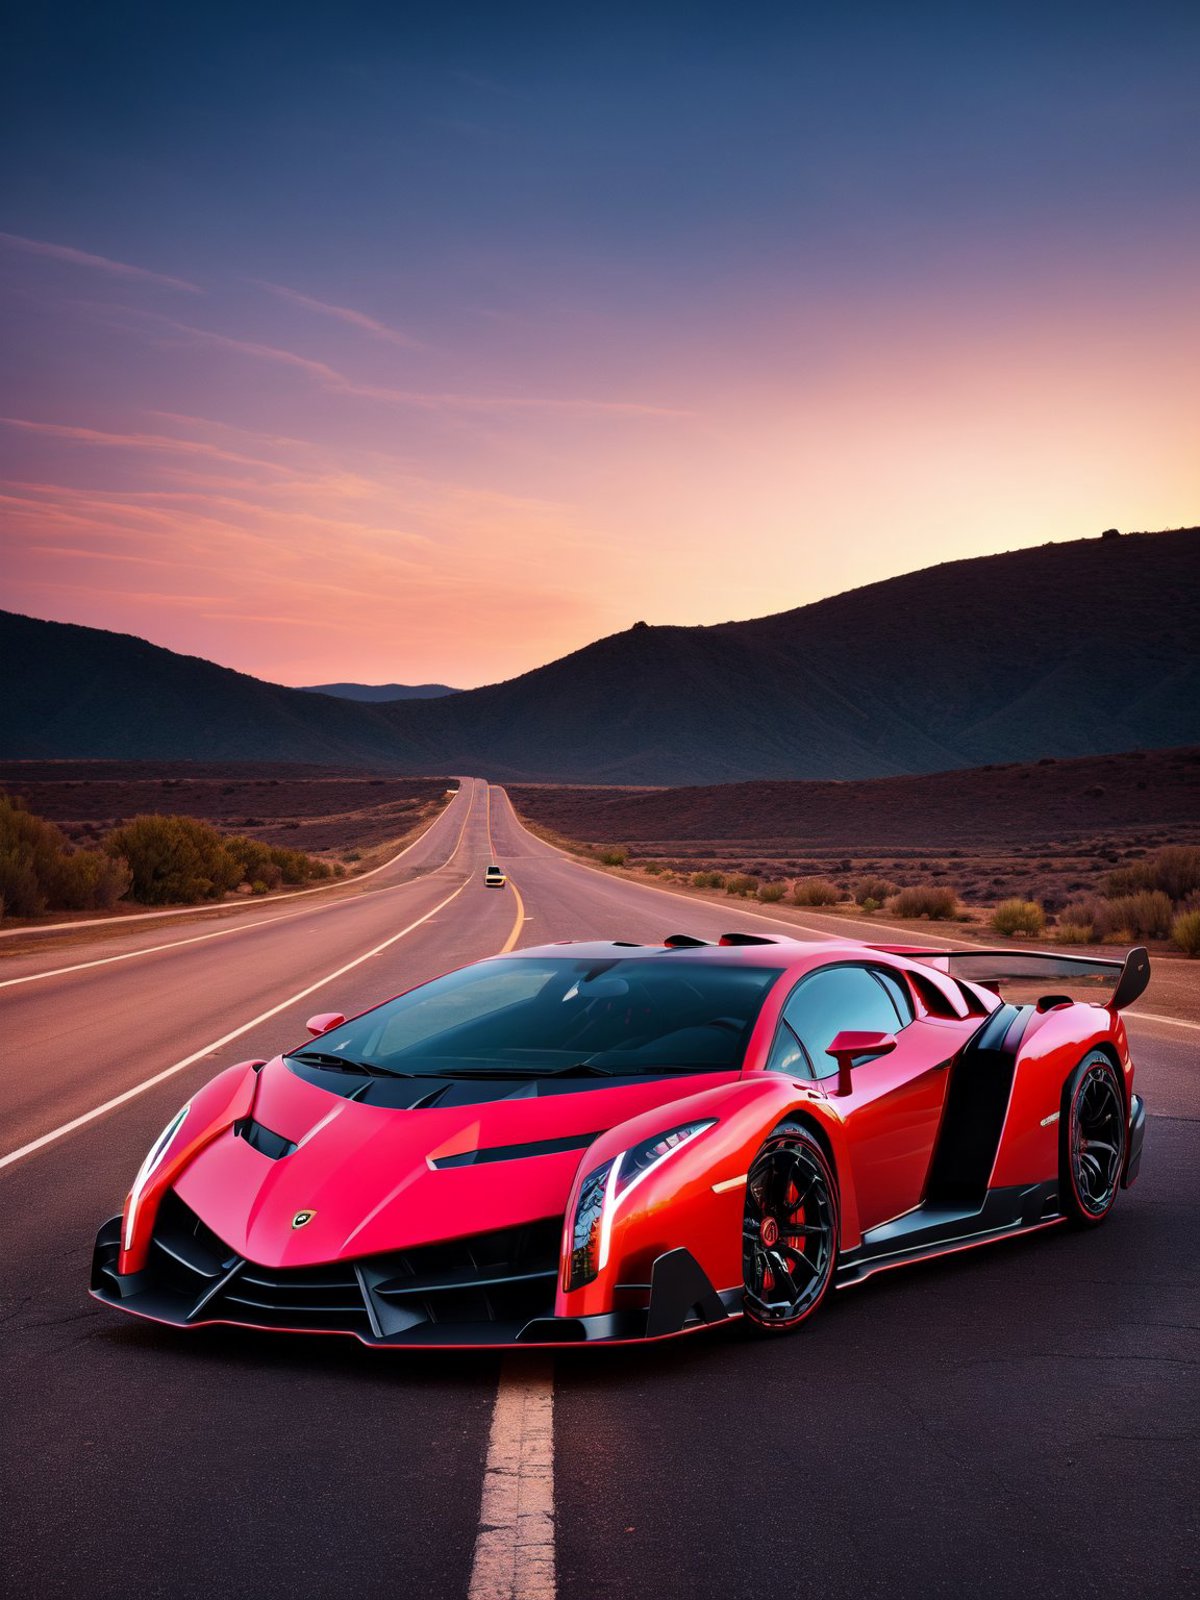 Lamborghini Veneno image by ARTik_31